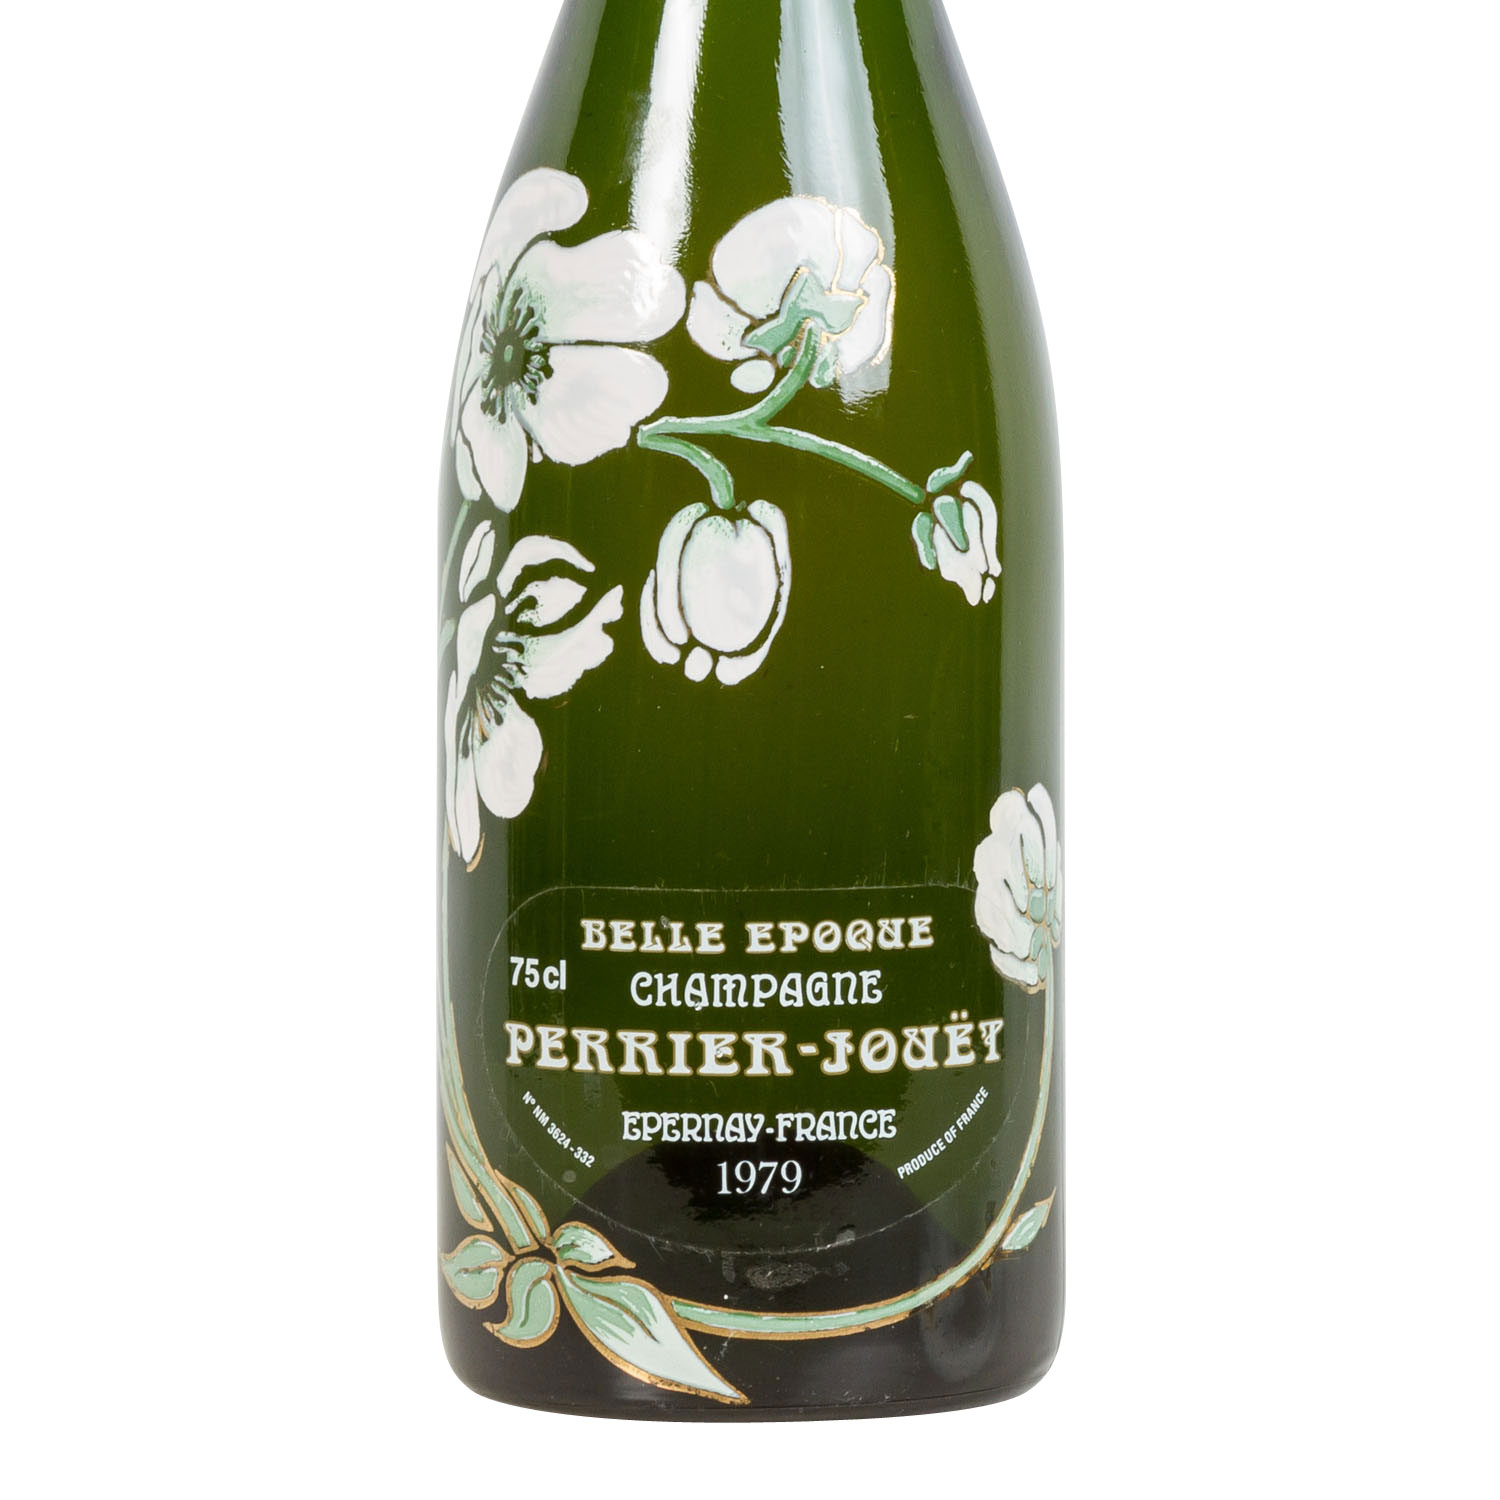 PERRIER-JOUET Champagner 'Belle Epoque' 1979,Champagne, Frankreich, Millésimé, 12% Vol., 750ml, - Image 2 of 2